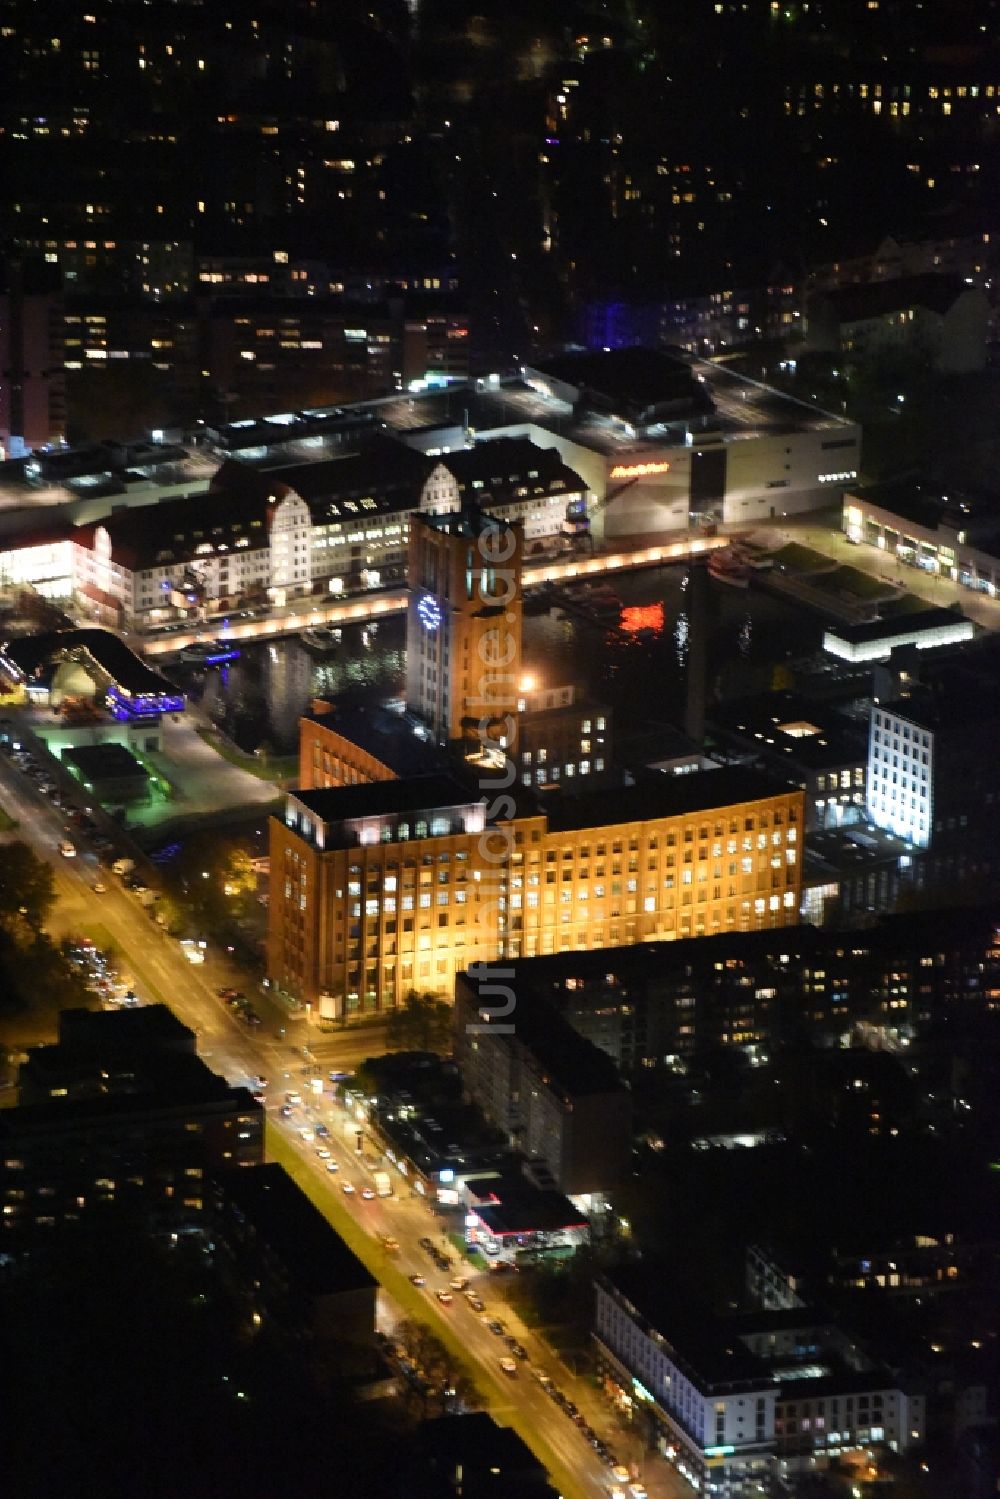 Nacht-Luftaufnahme Berlin - Nachtluftbild von Ullsteinhaus und Einkaufszentrum Tempelhofer Hafen am Tempelhofer Damm in Berlin